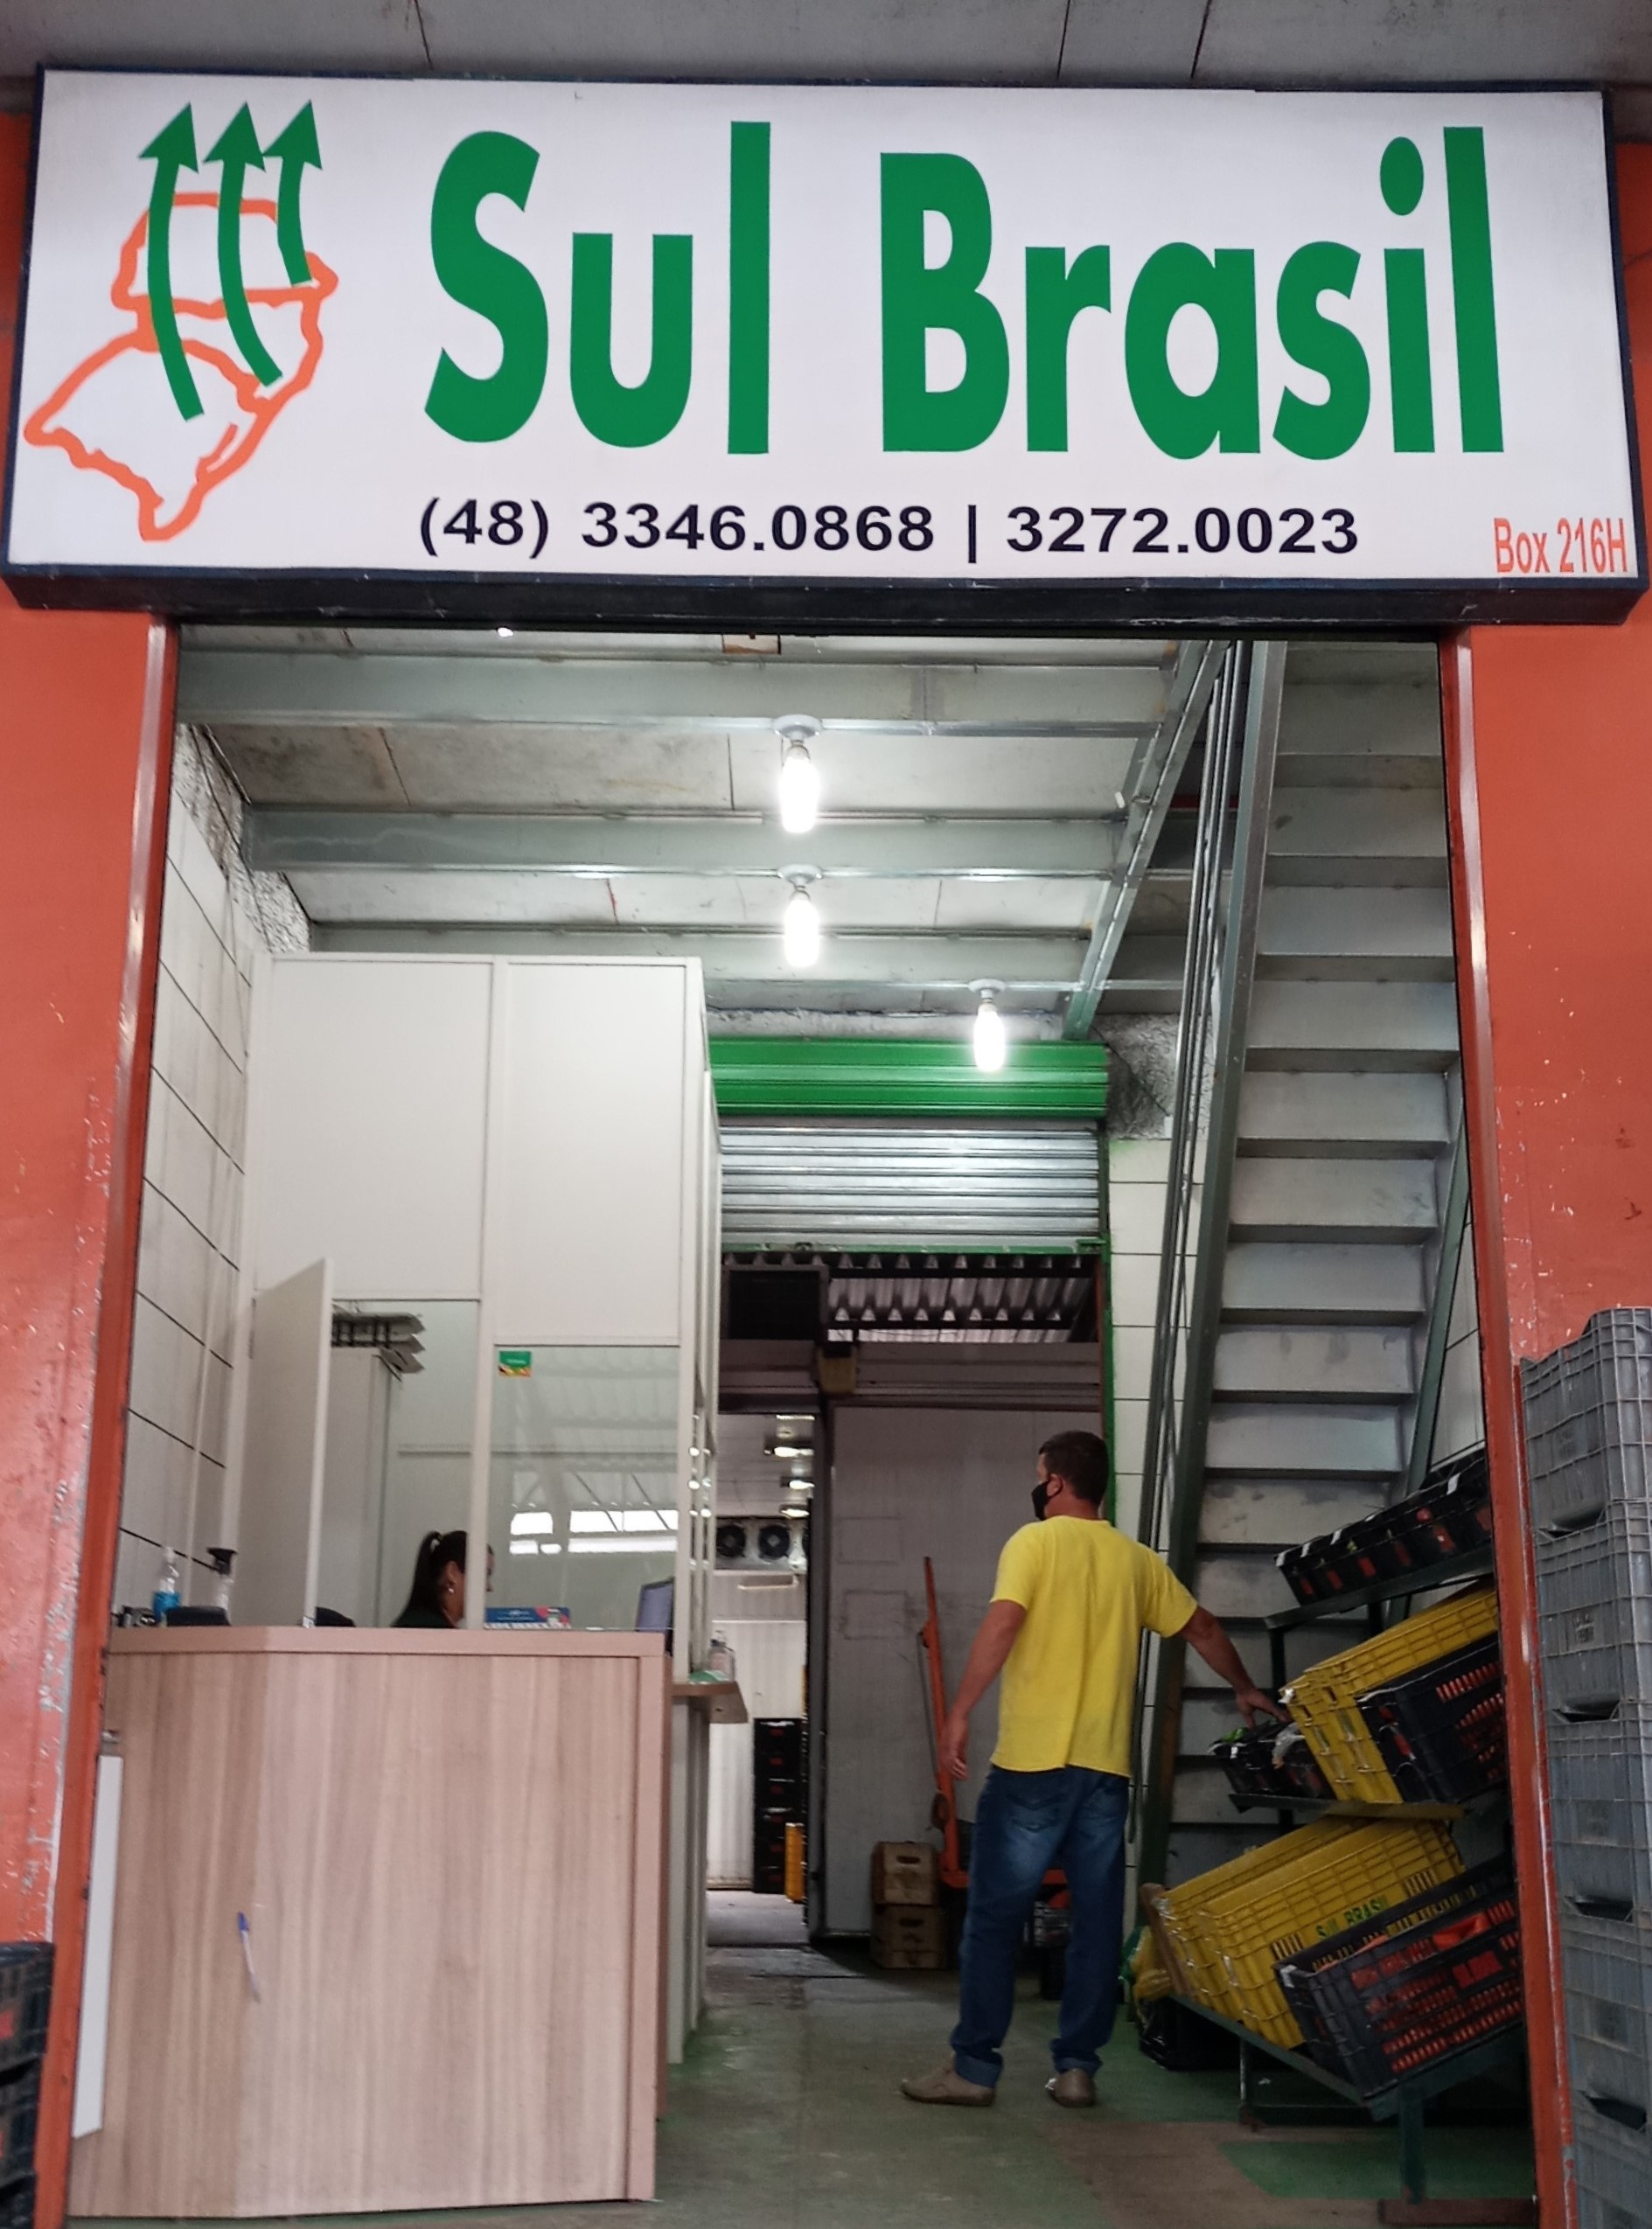 216 sul brasil